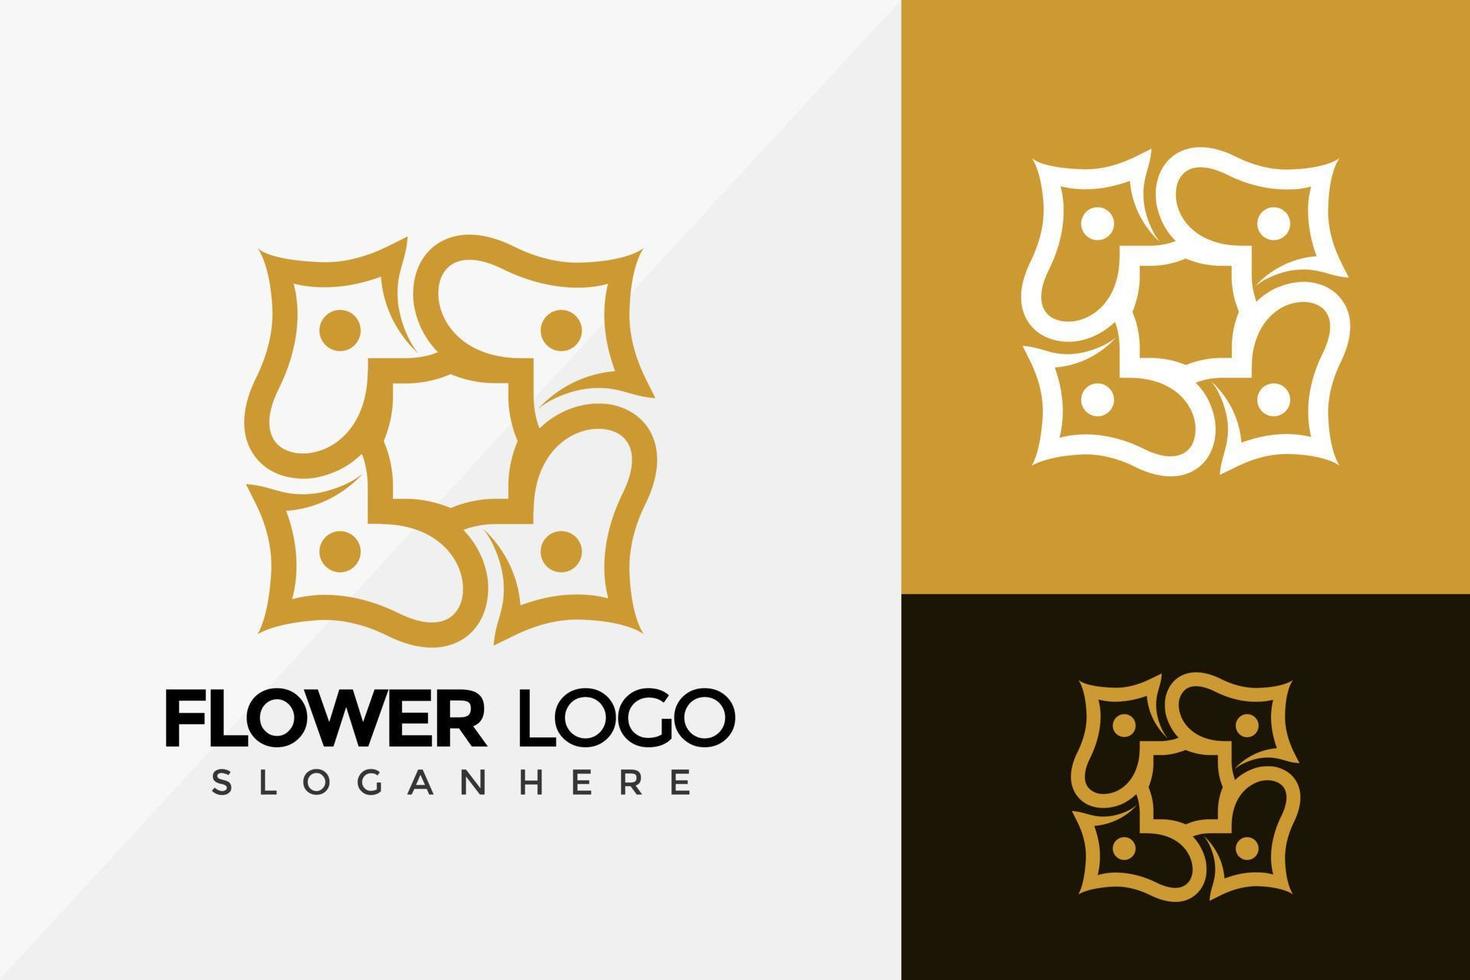 design del logo di lusso del fiore reale, loghi dell'identità del marchio progetta il modello di illustrazione vettoriale